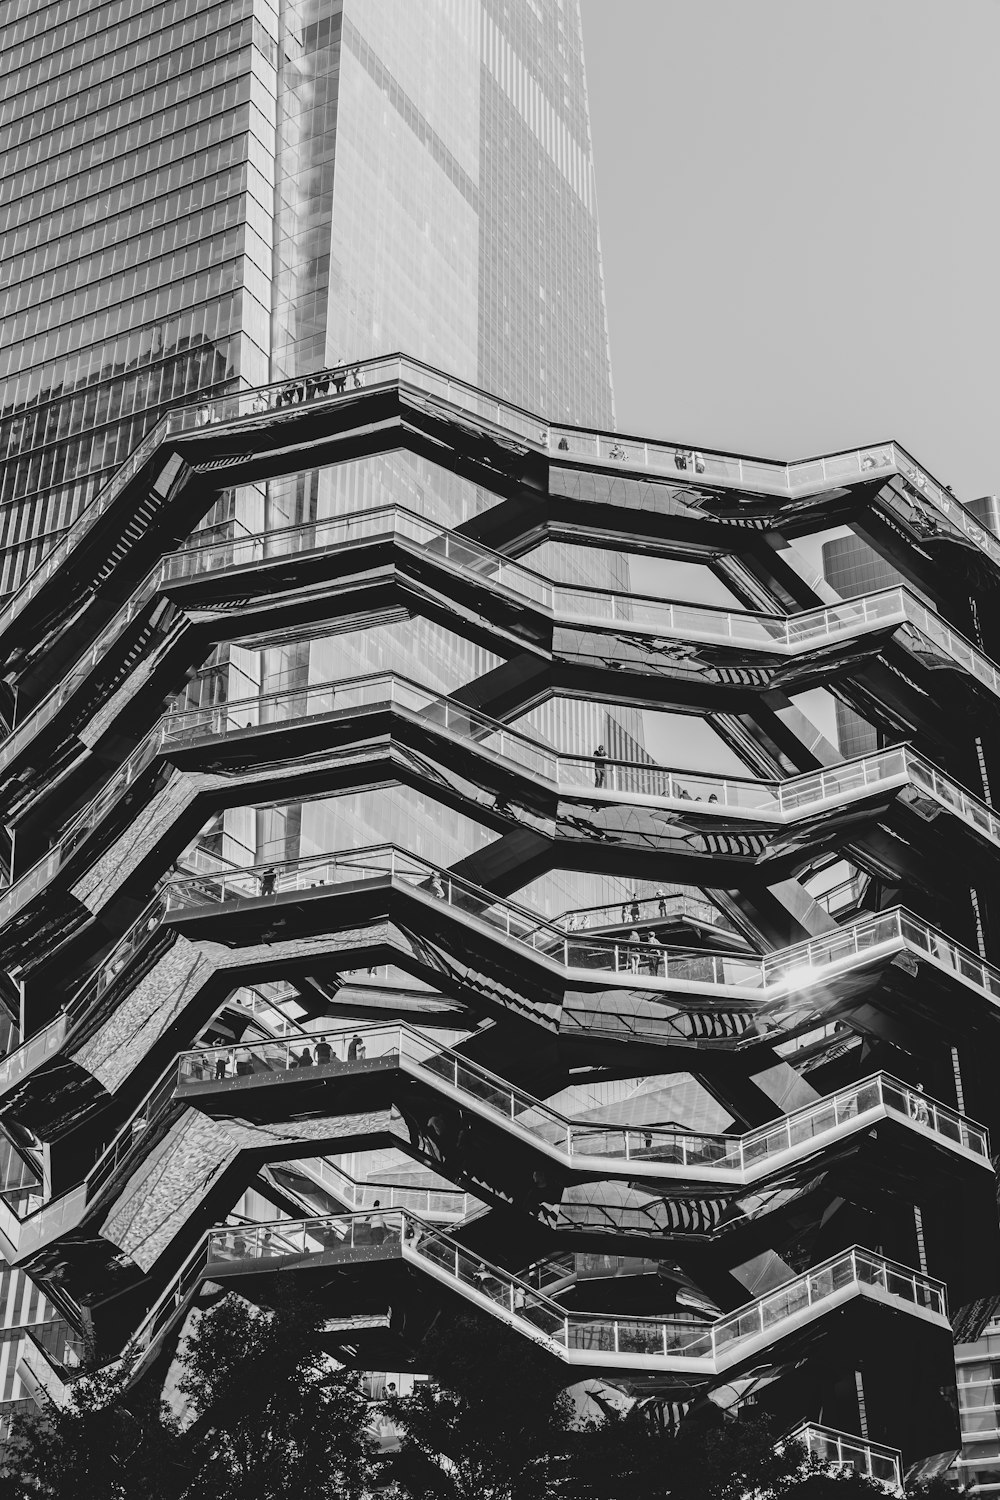 검은 색과 회색 건물의 회색조 사진